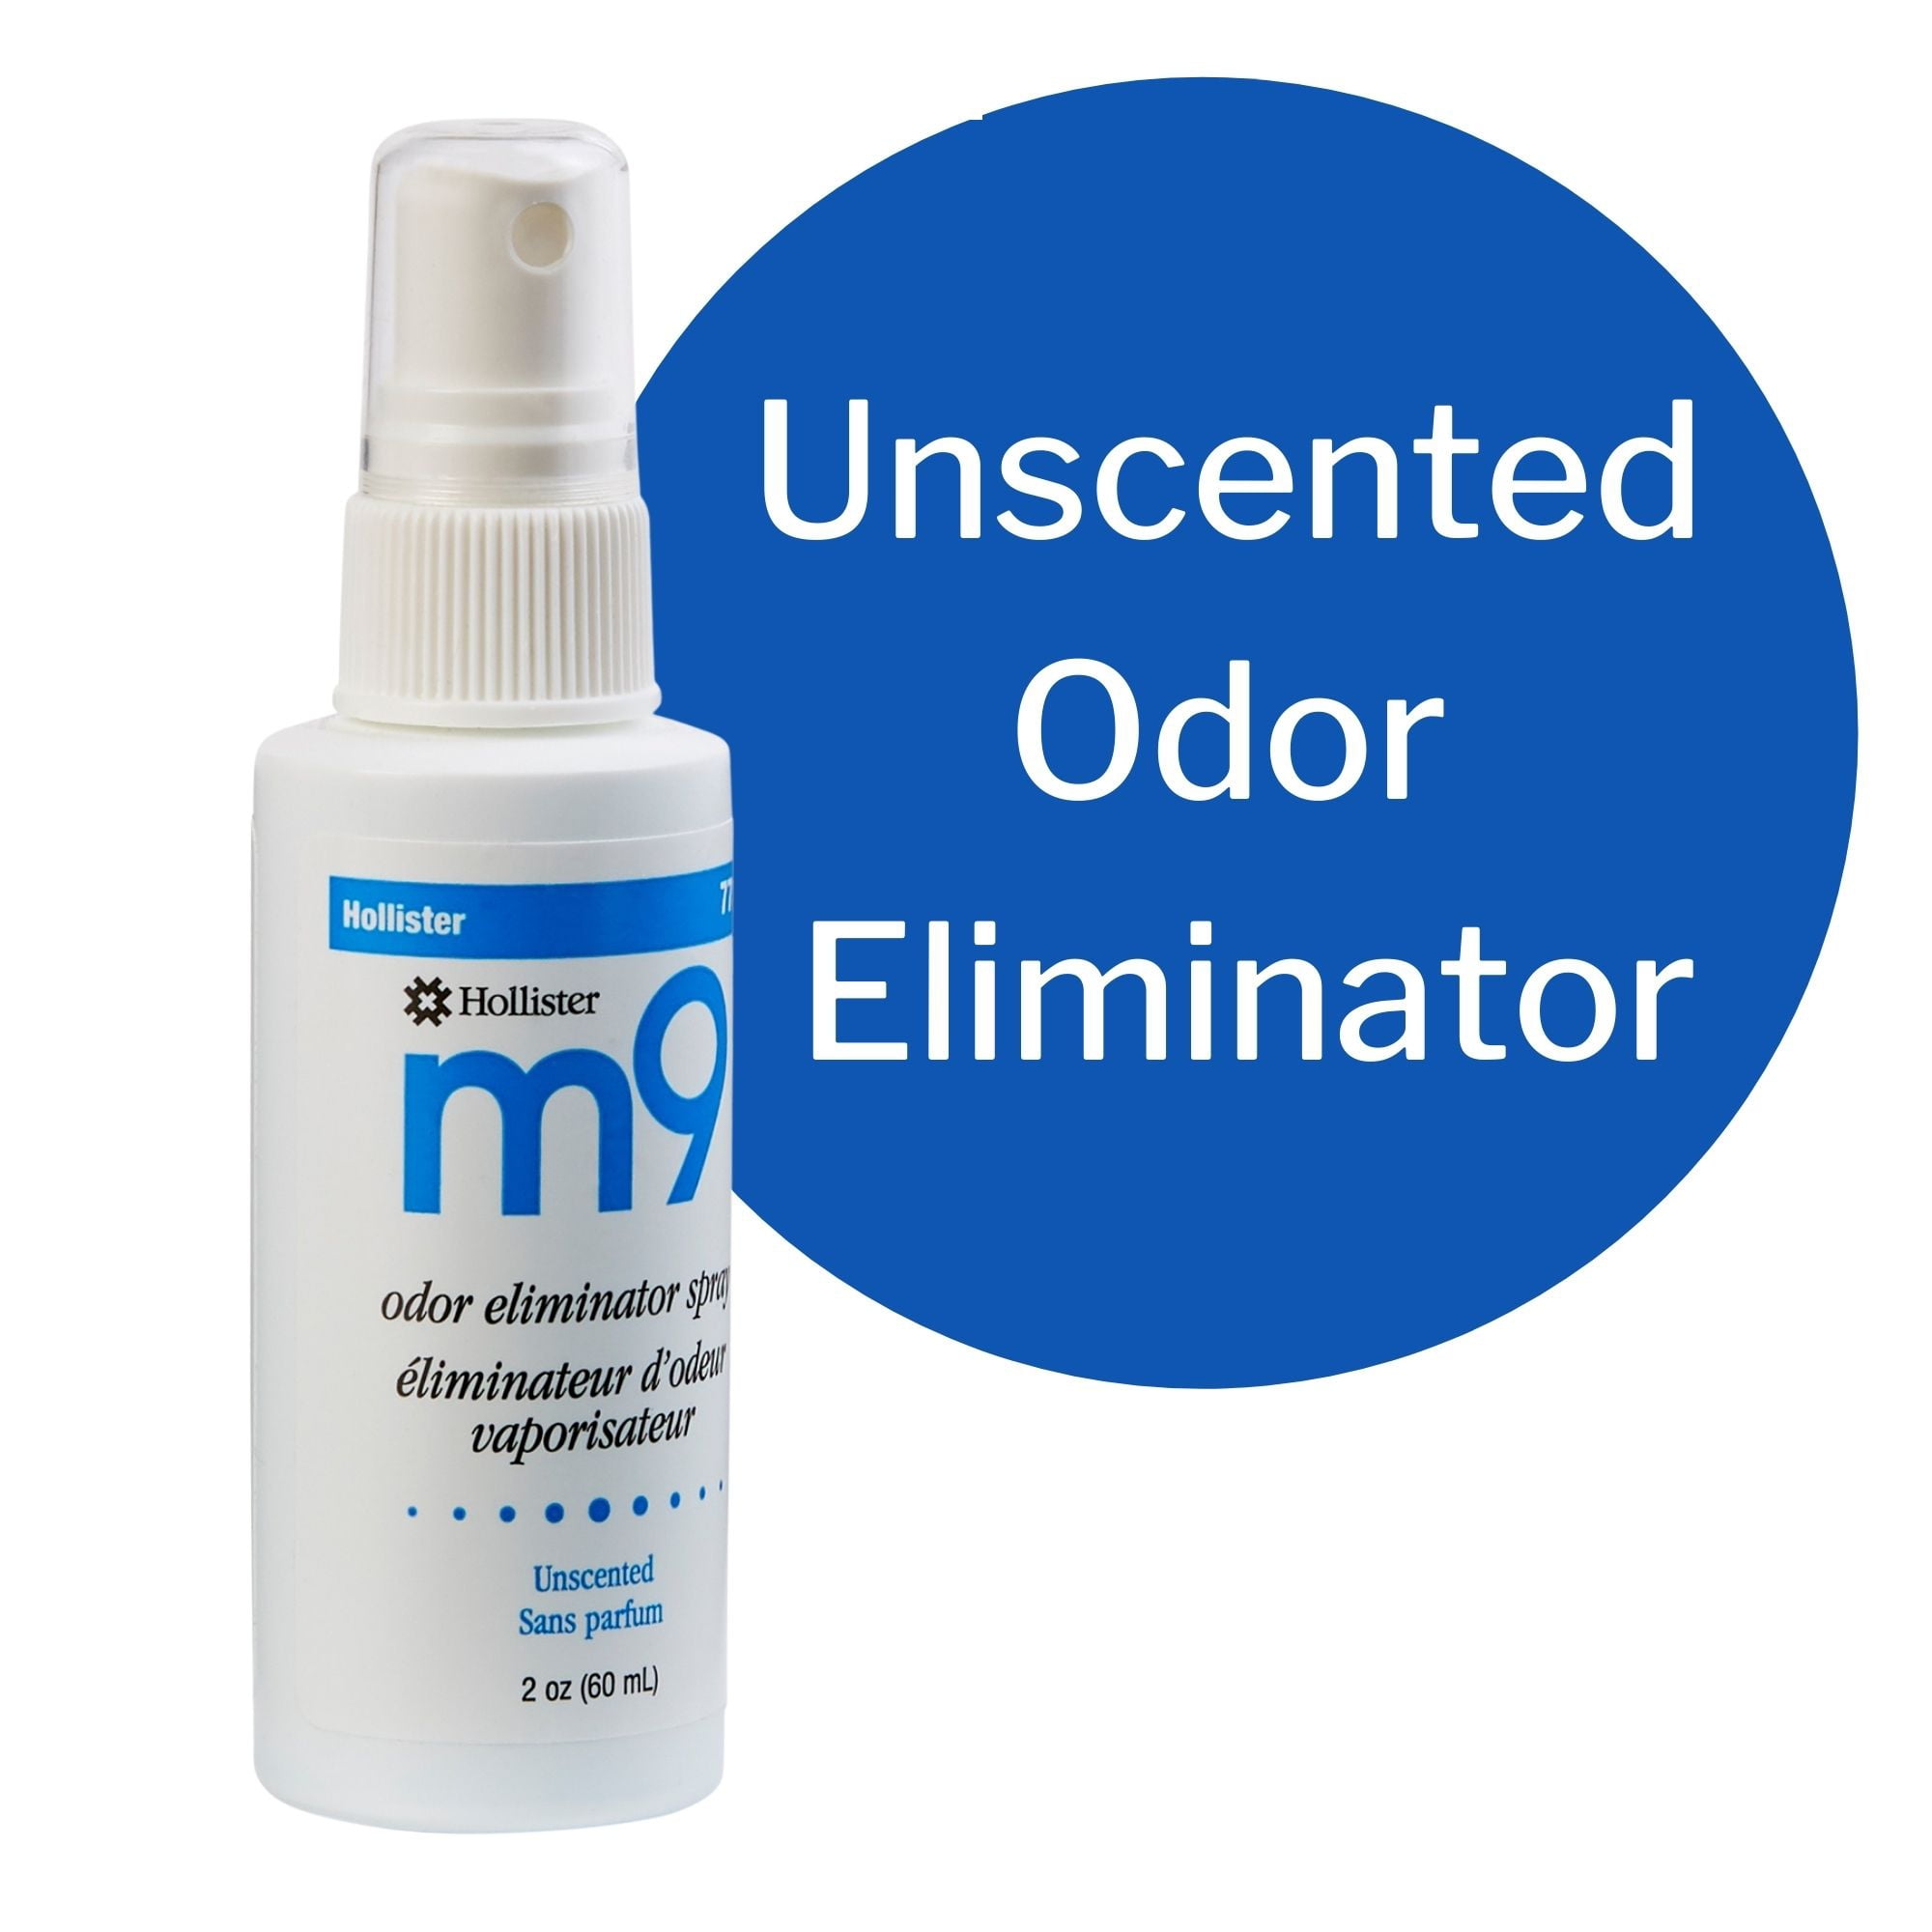 Hollister m9 Odor Eliminator Spray for Ostomy Care, Unscented, 1